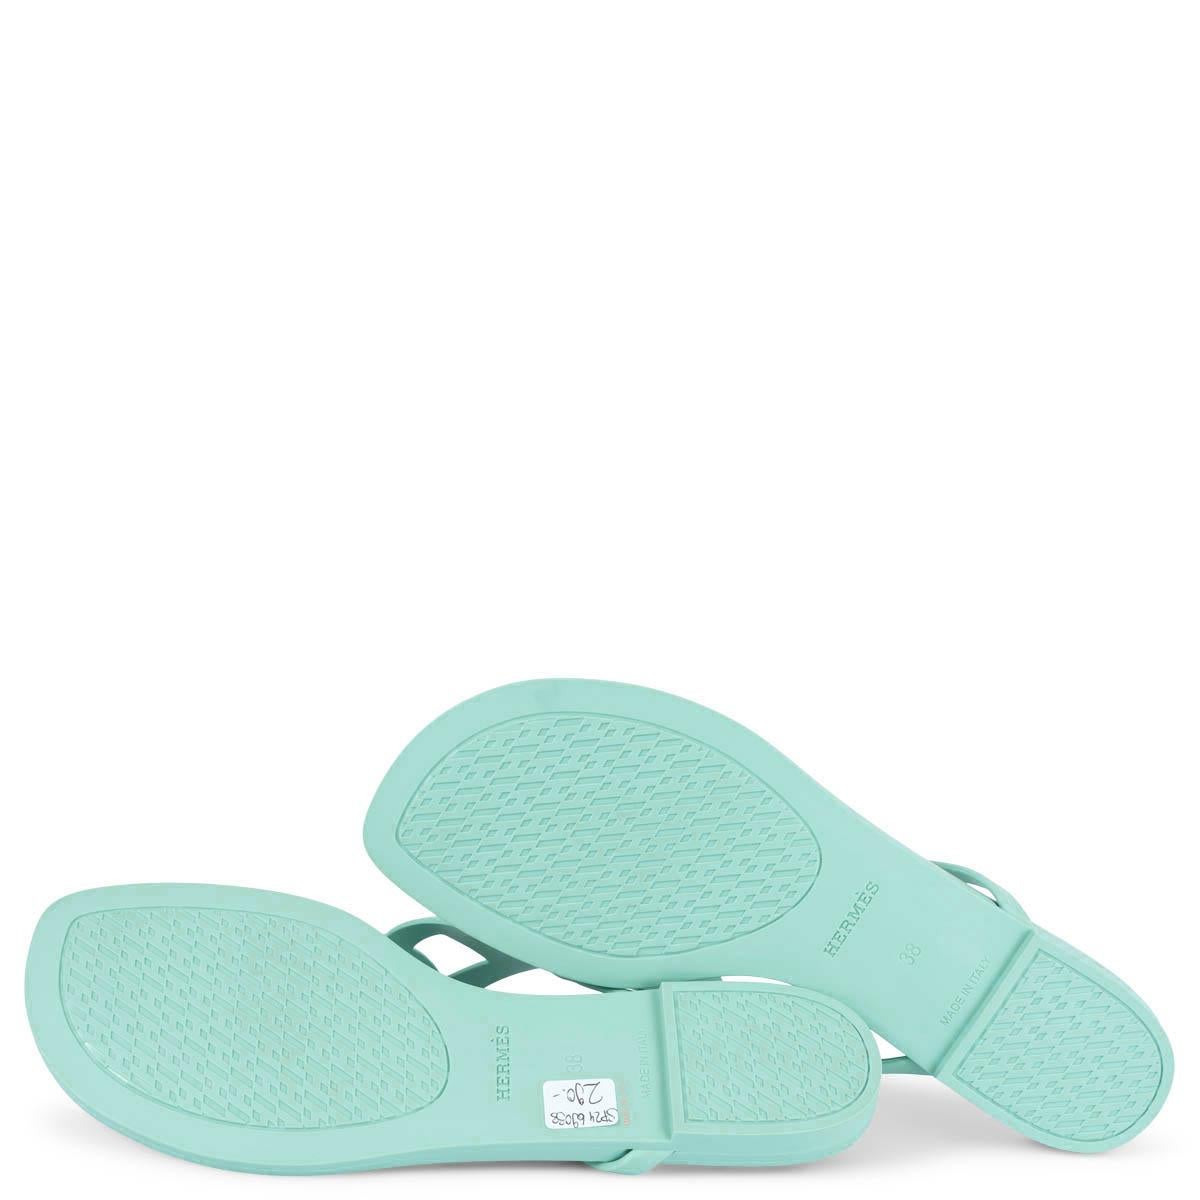 HERMES Vert Embrun green rubber EGERIE Thong Sandals Shoes 38 4